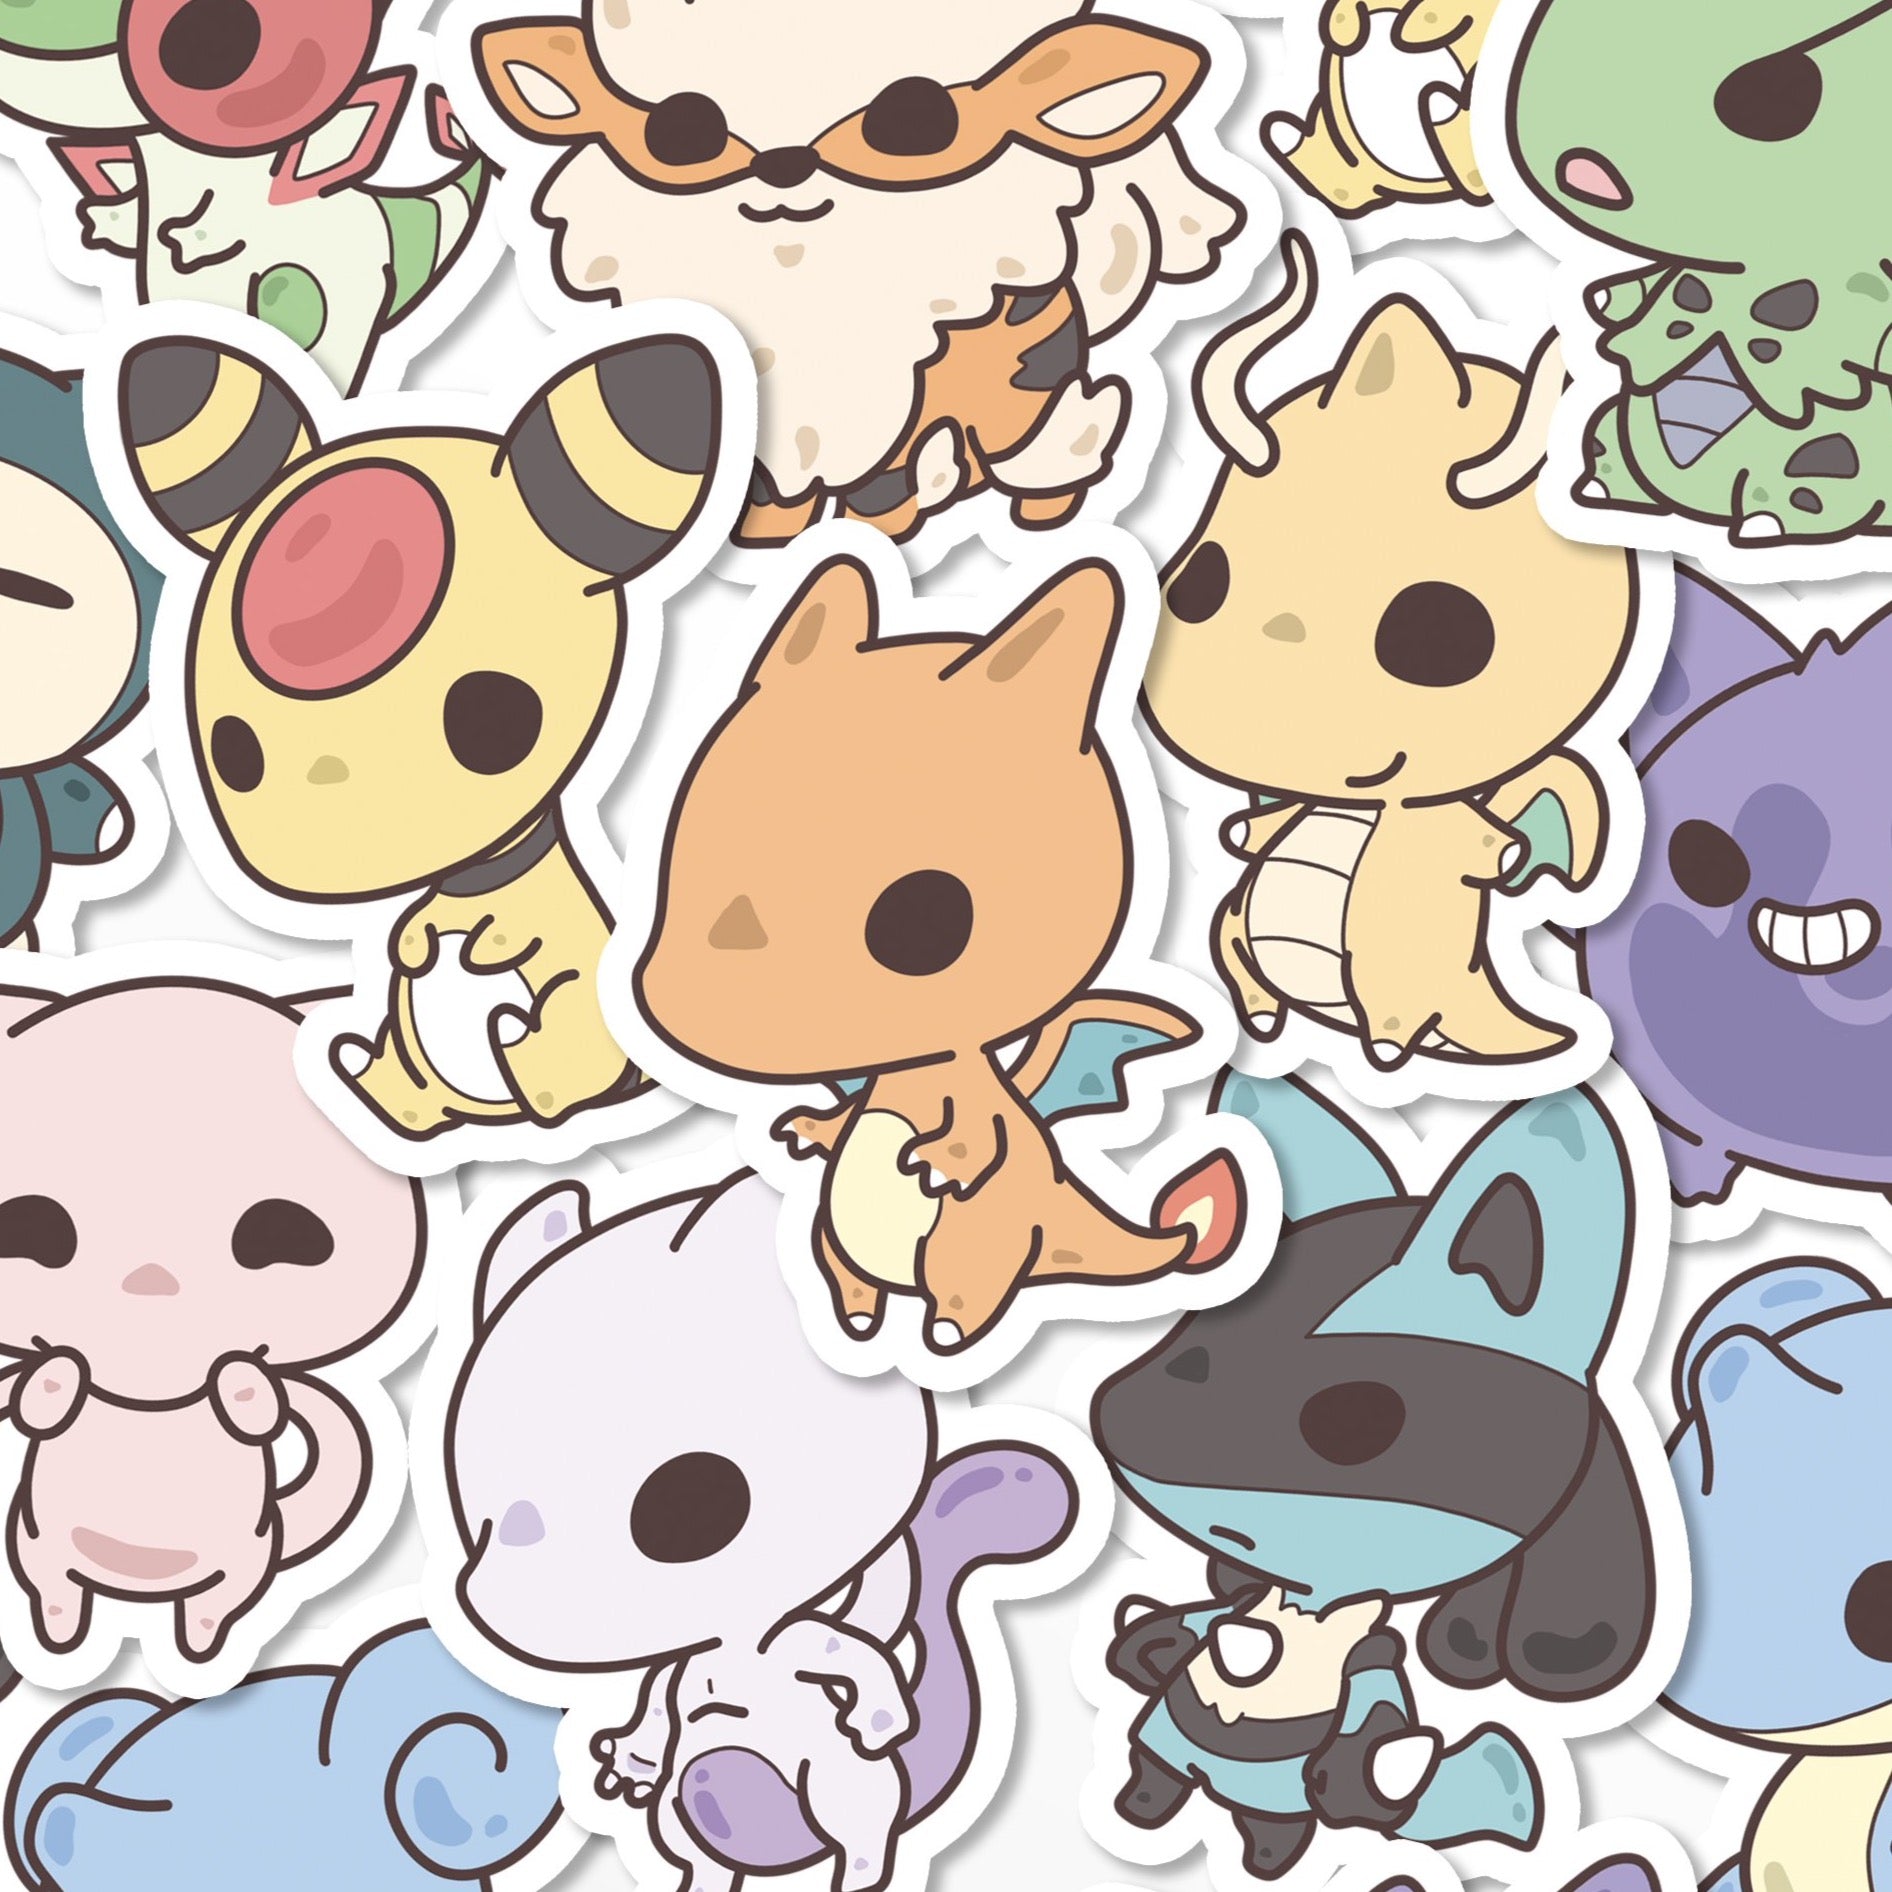 Sticker Pokémon 